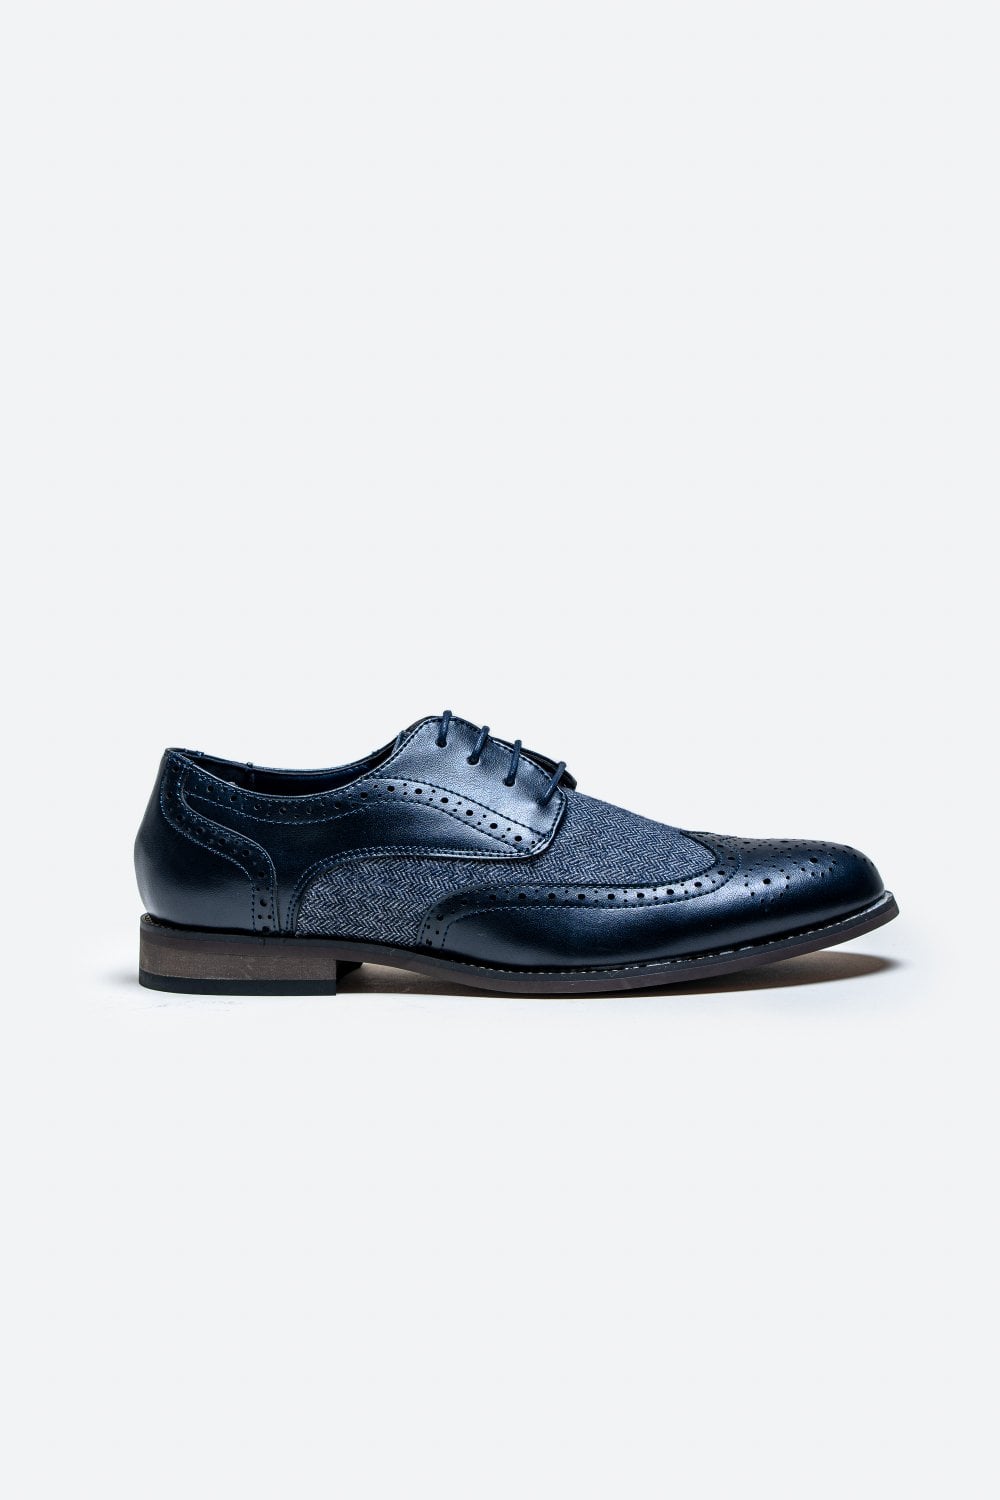 Cavani Oliver Tweed Schoenen - Navy - schoenen